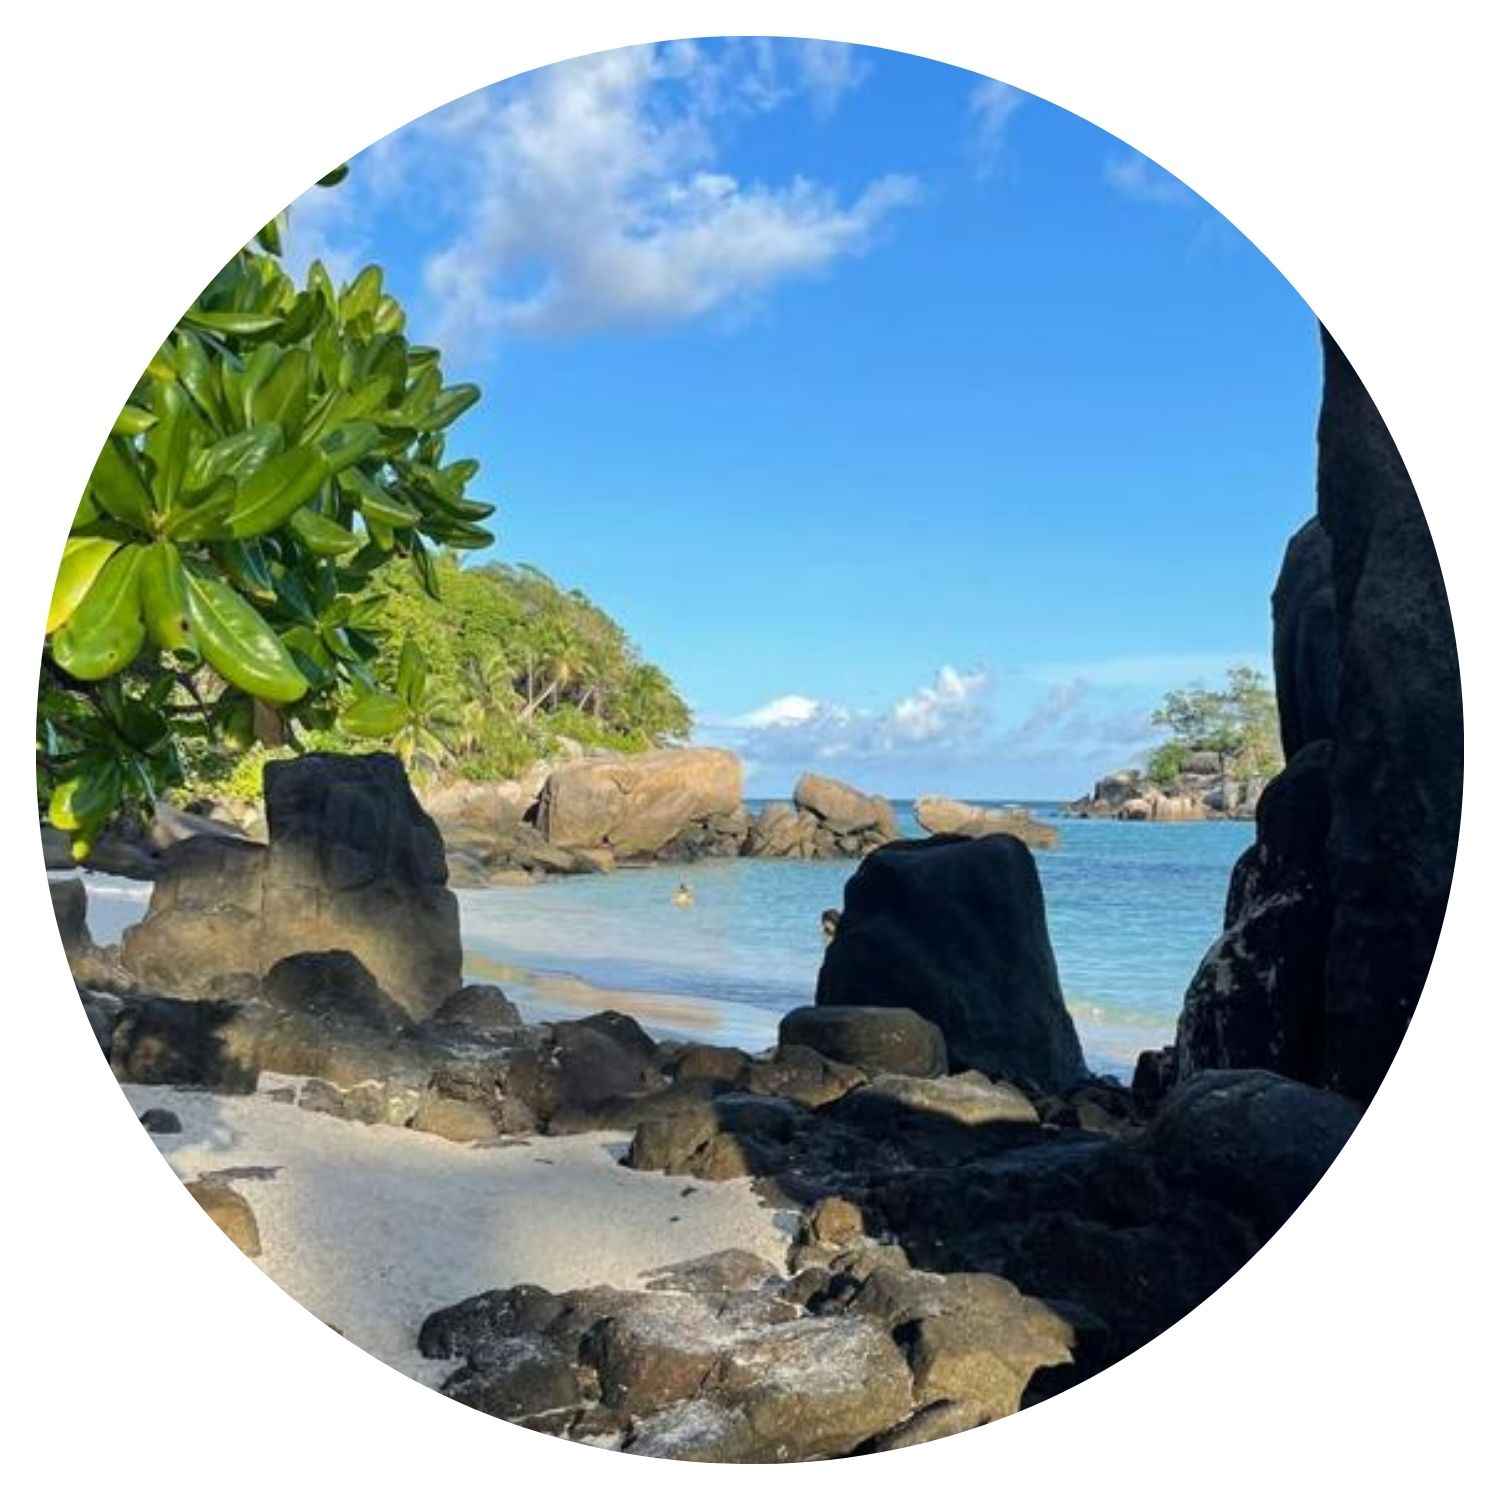 Voyage aux Seychelles en famille avec l'avis de Bastellica, excursion sur une plage pittoresque entourée de verdure et de rochers.